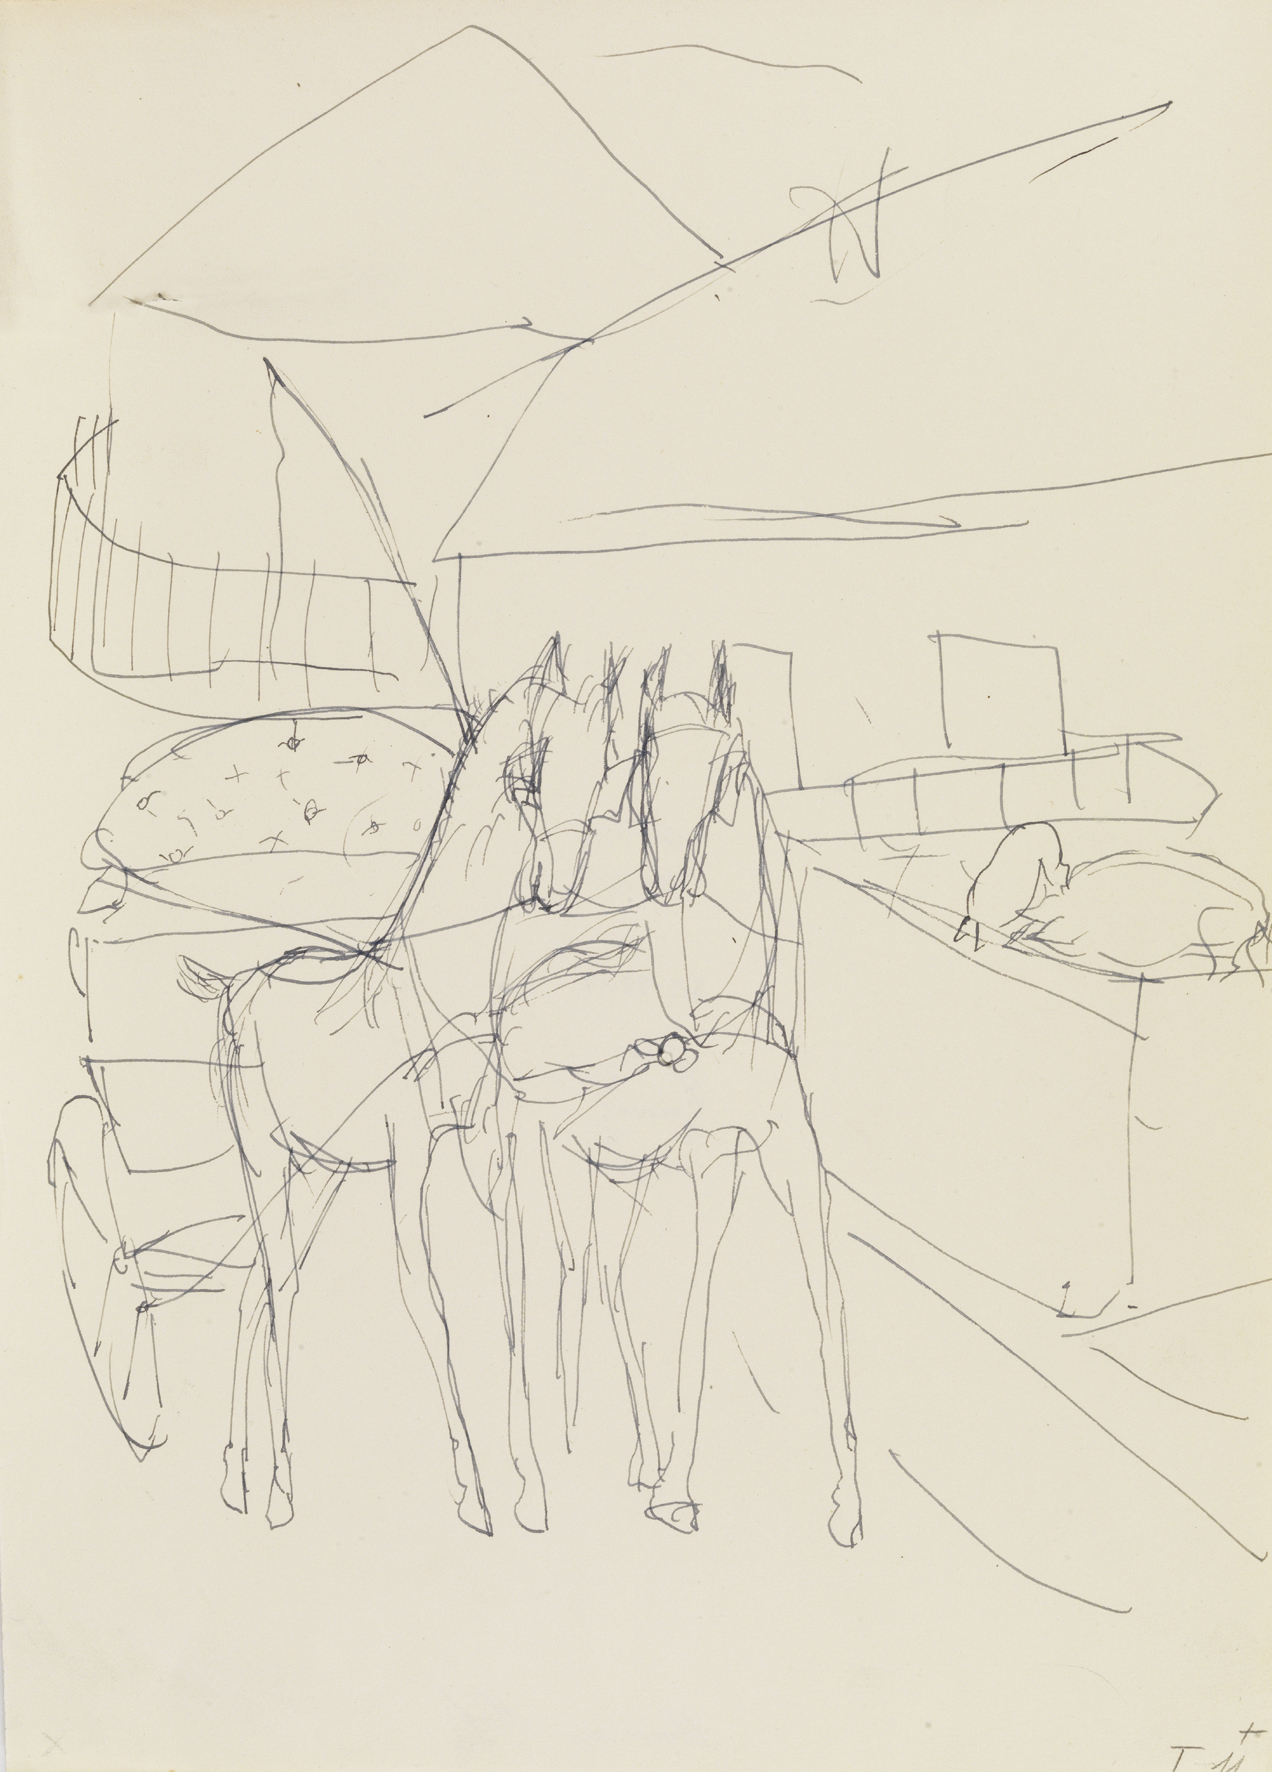 Paul Holz: Kleines Pferdegespann, ohne Jahr, Feder, Tinte auf Papier, 31,9 x 23 cm